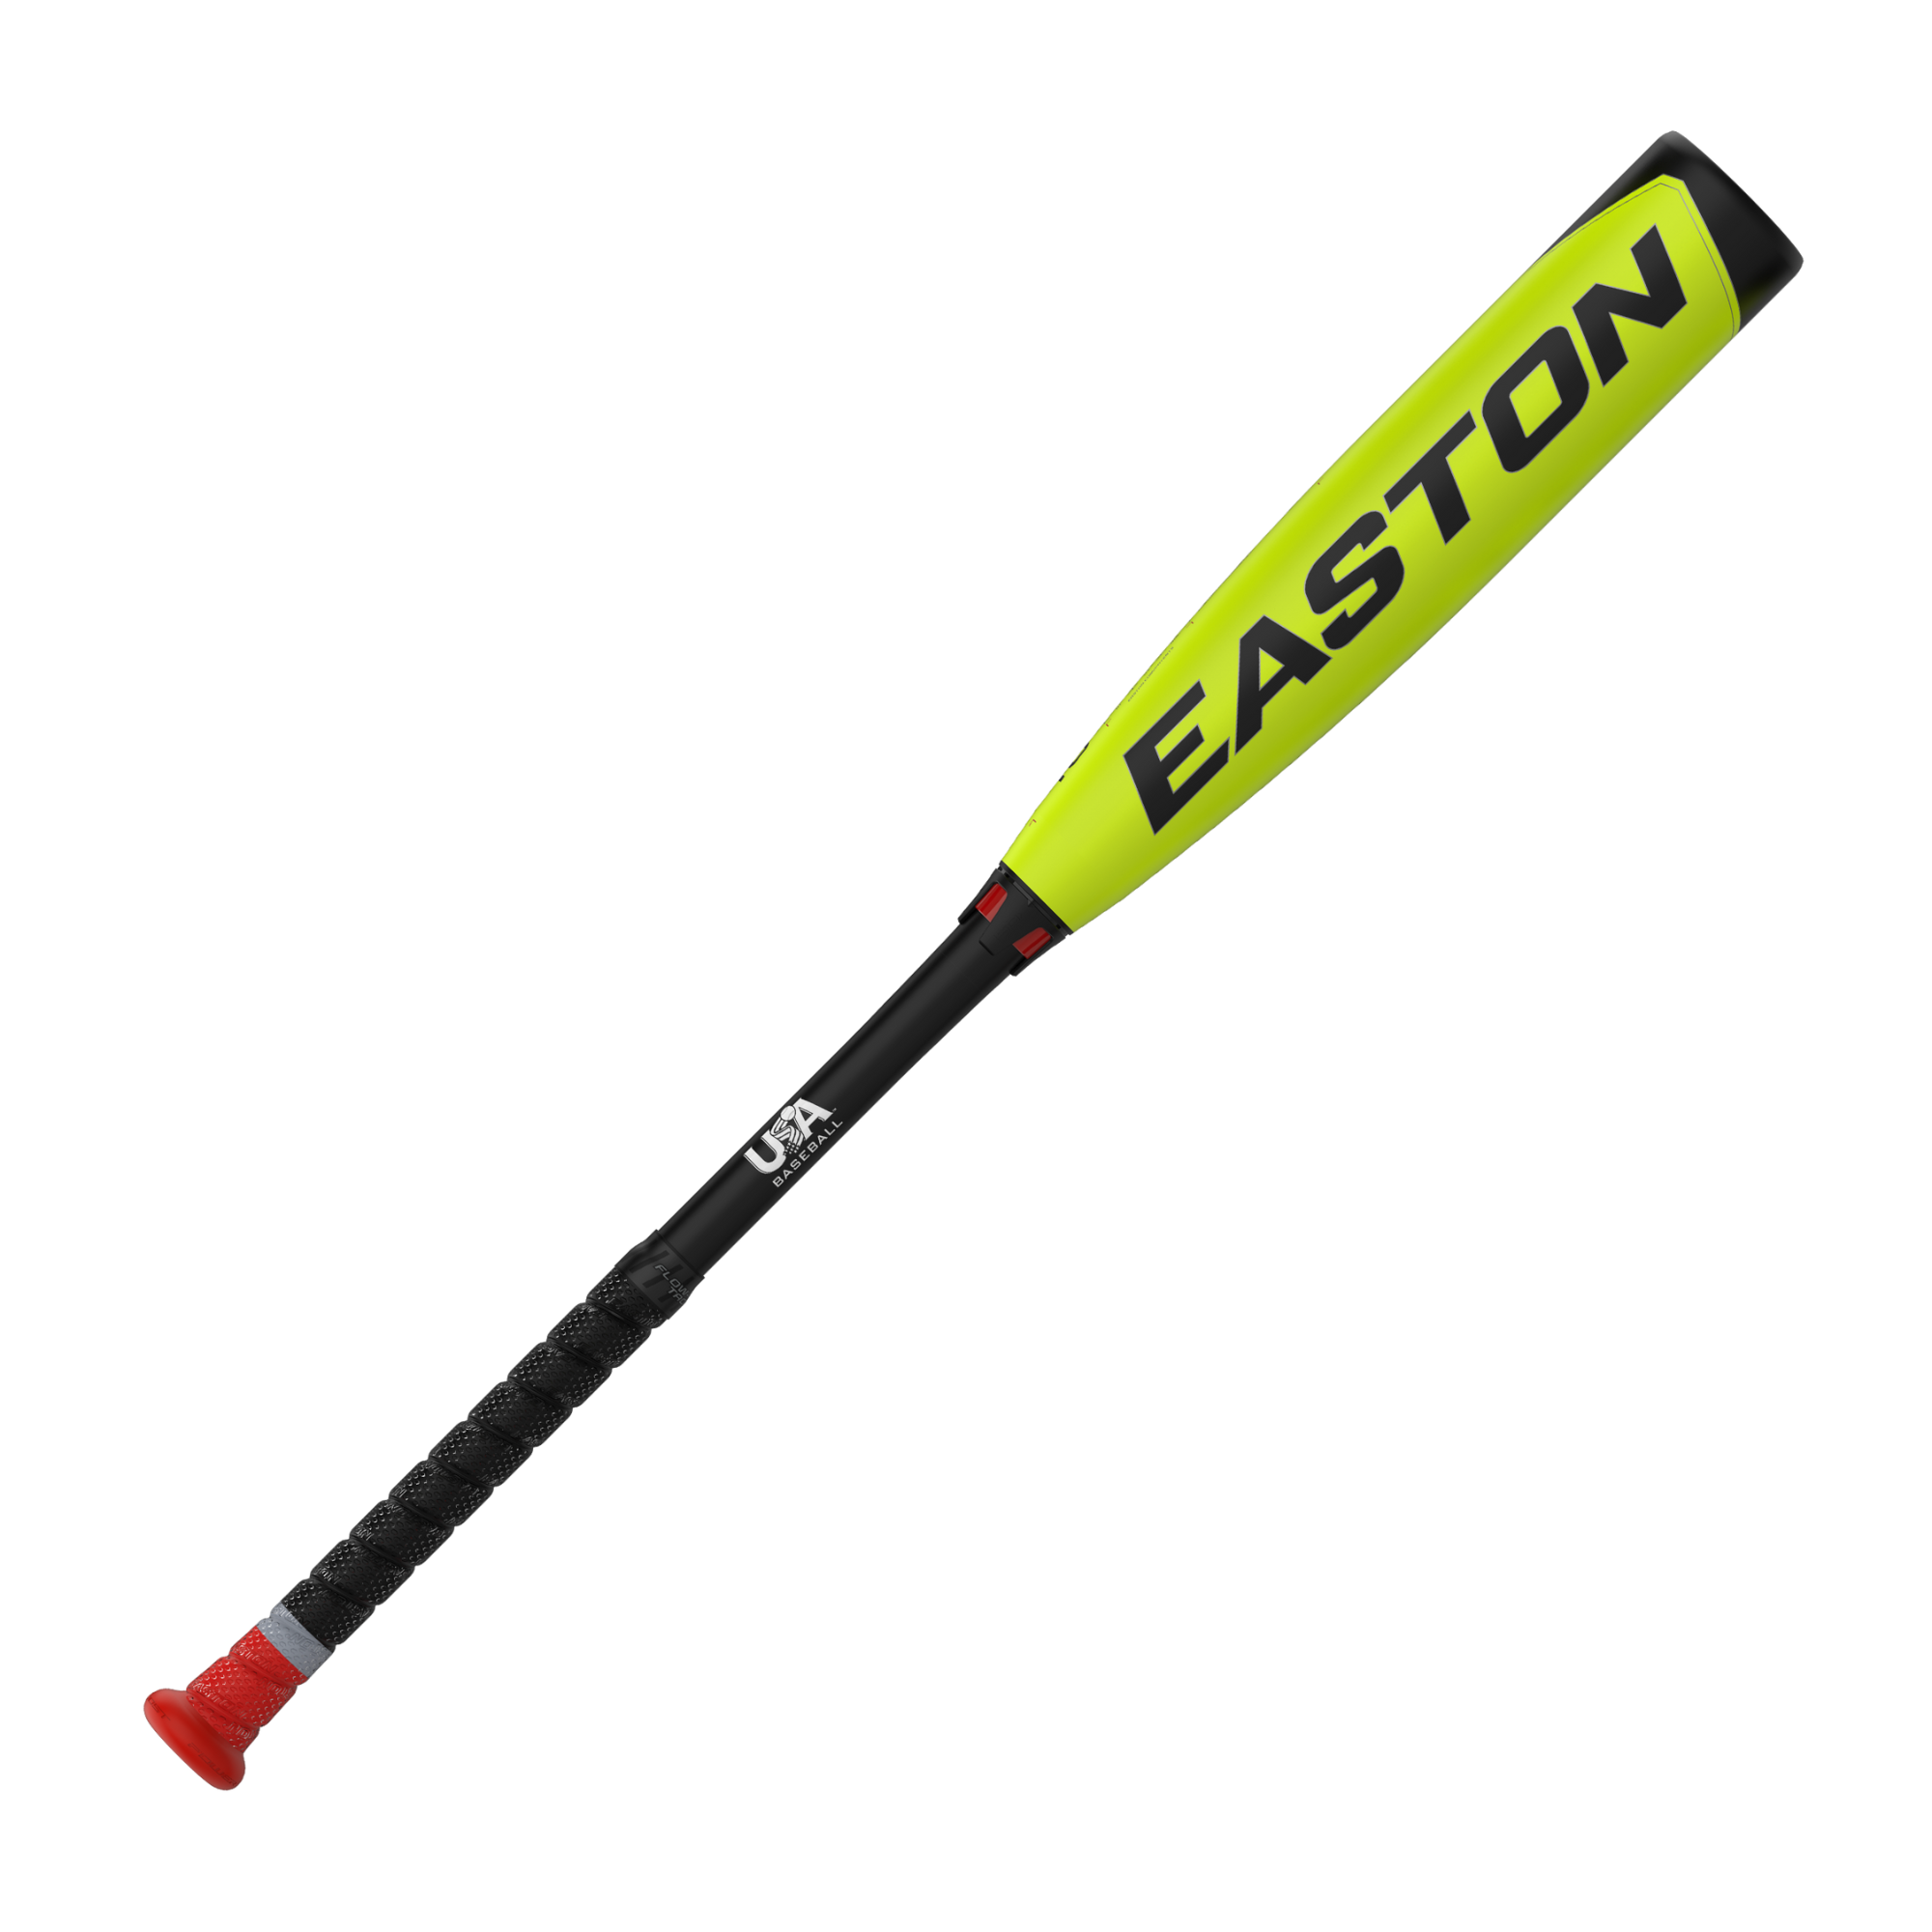 Easton ADV 360 -12 USA Baseball Bat - 28”